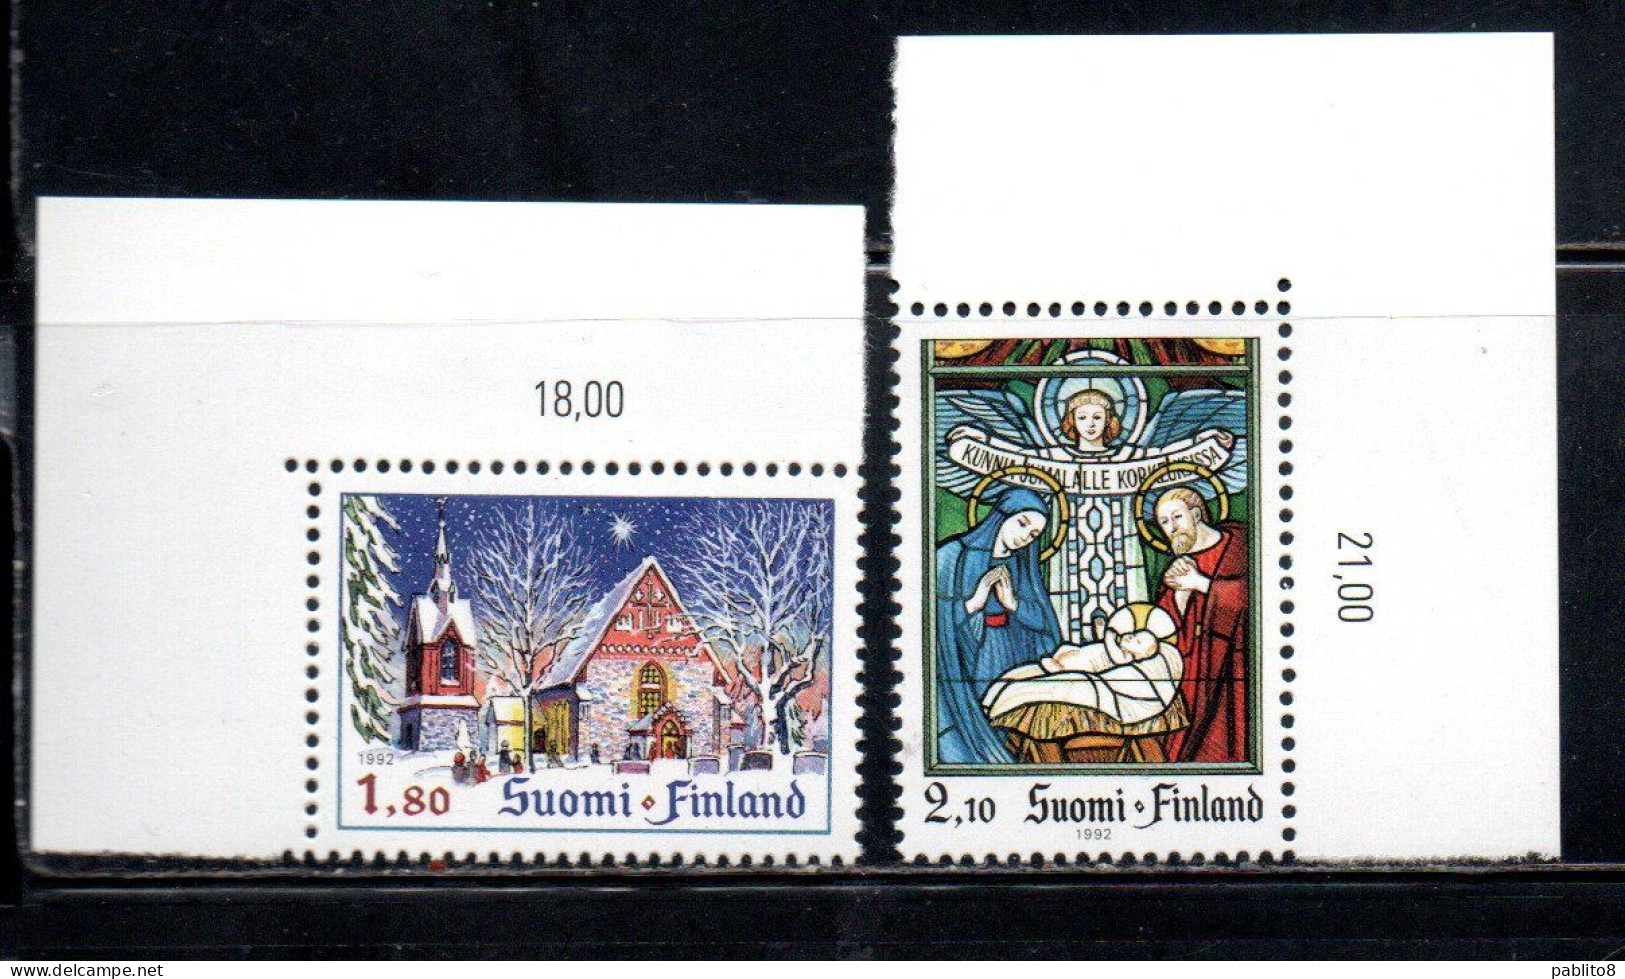 SUOMI FINLAND FINLANDIA FINLANDE 1992 CHRISTMAS NATALE NOEL WEIHNACHTEN NAVIDAD COMPLETE SET SERIE COMPLETA MNH - Unused Stamps